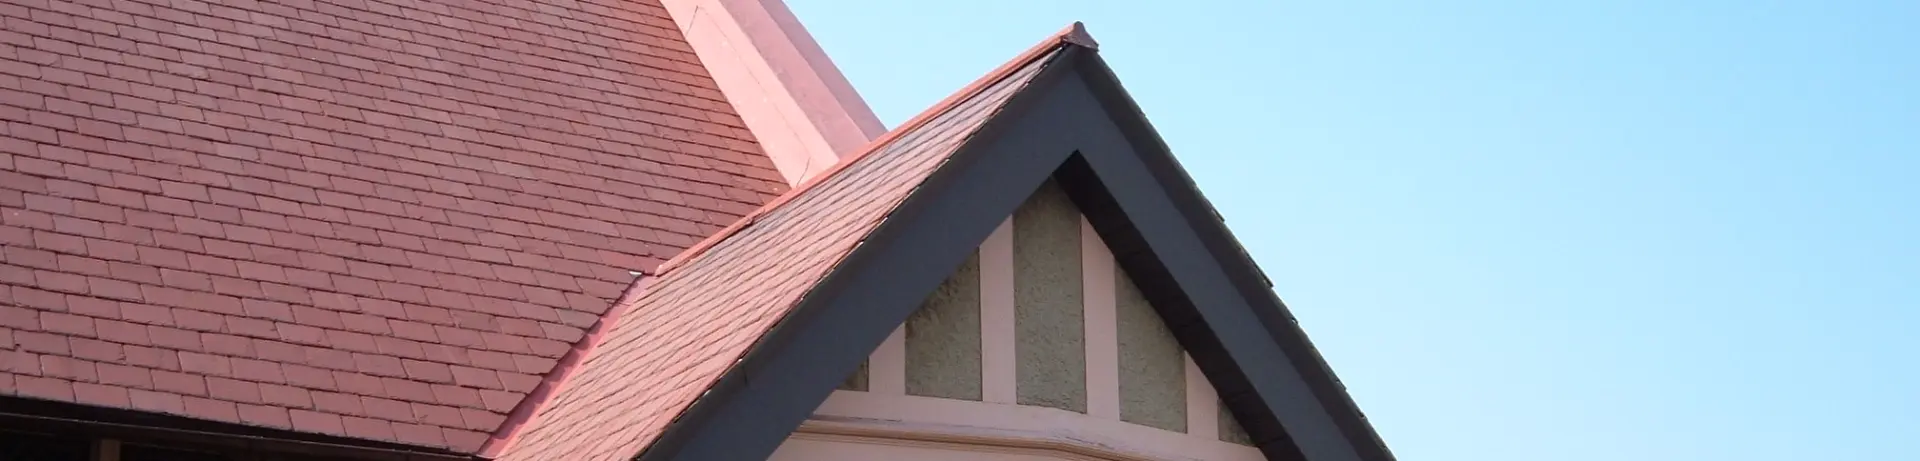 A closeup image of a slate roof.